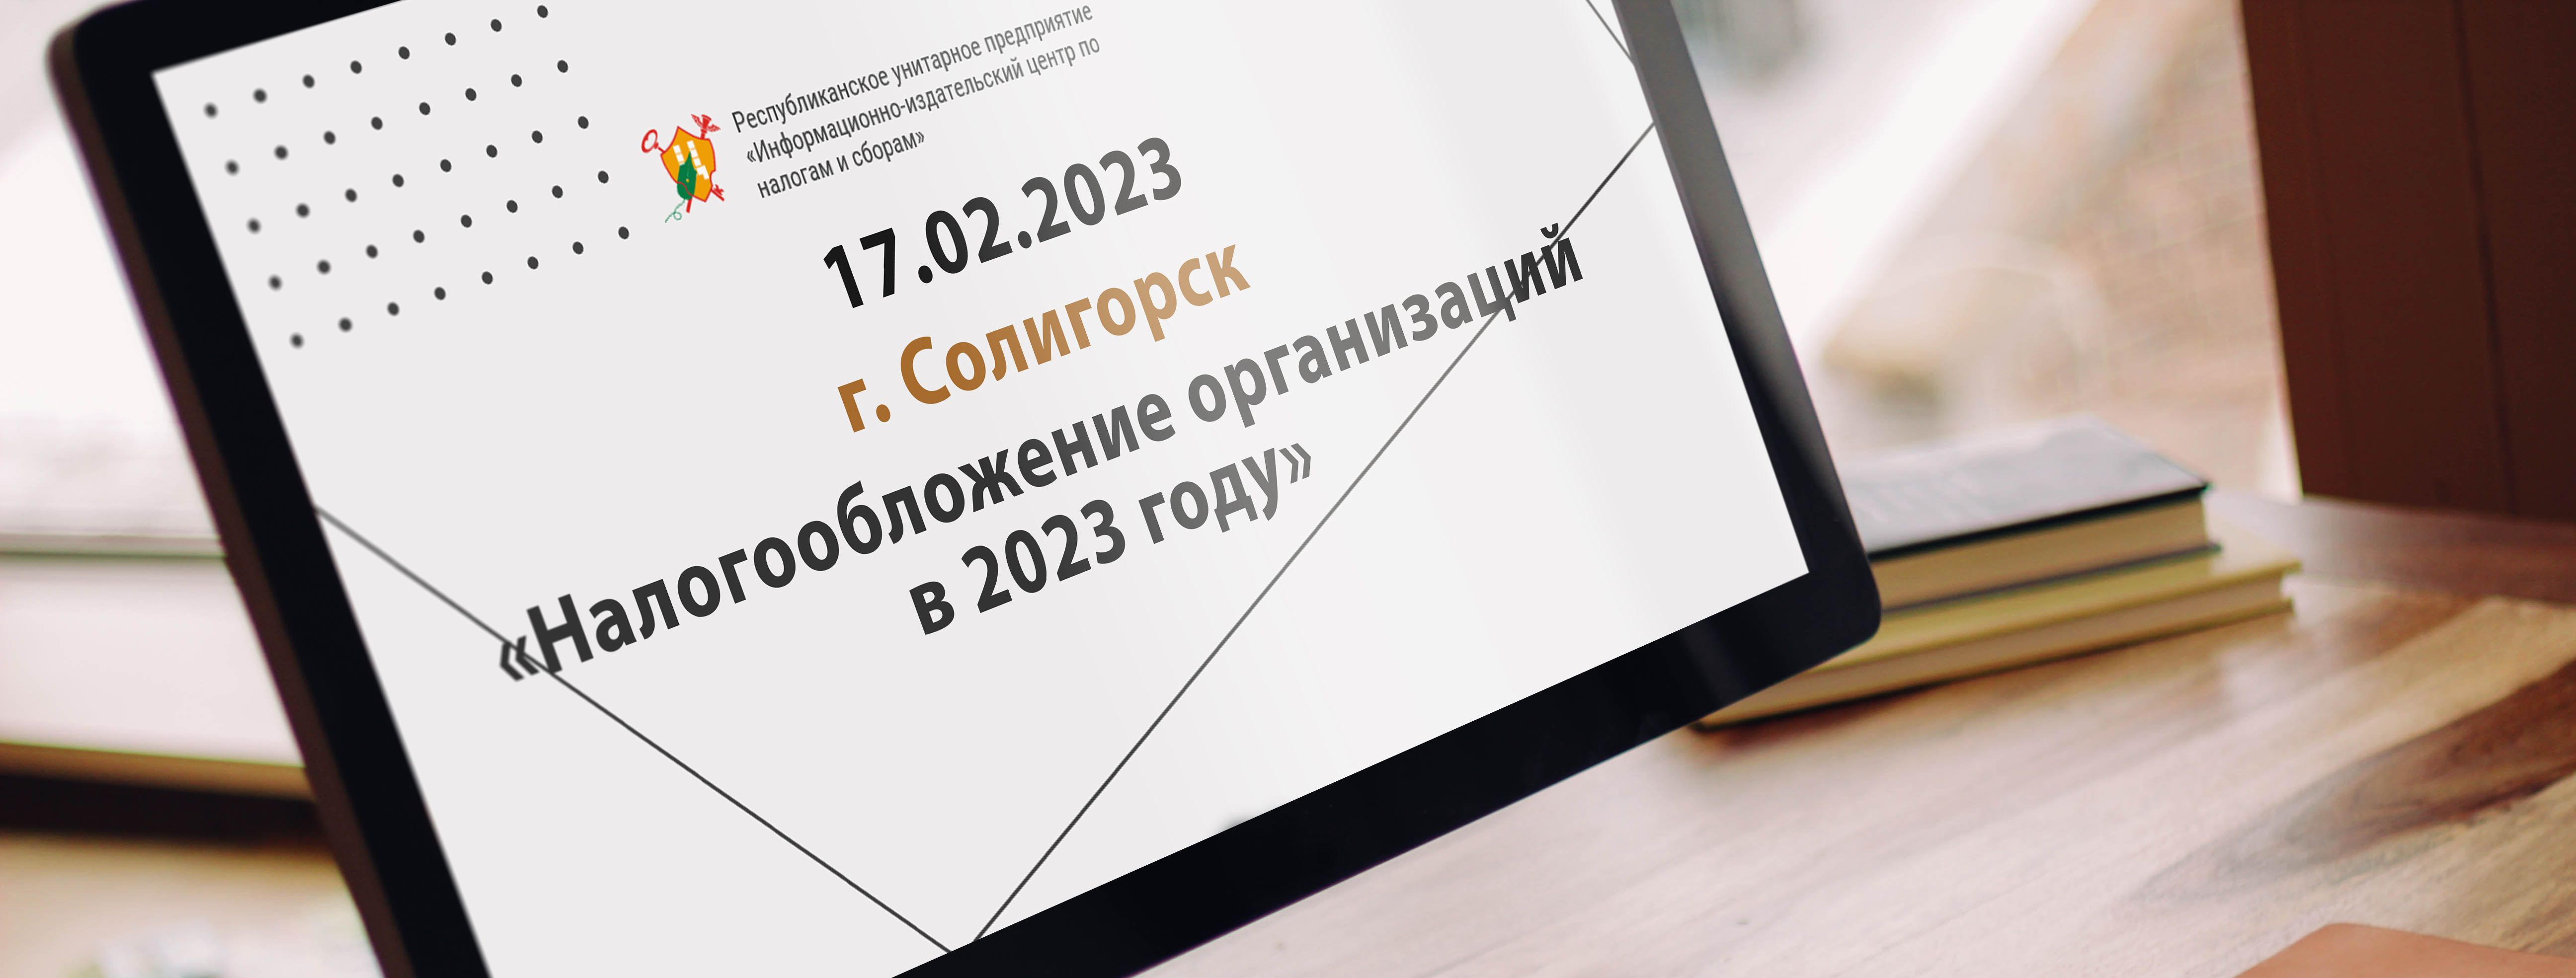 17.02.2023 г. Солигорск «Налогообложение организаций в 2023 году»